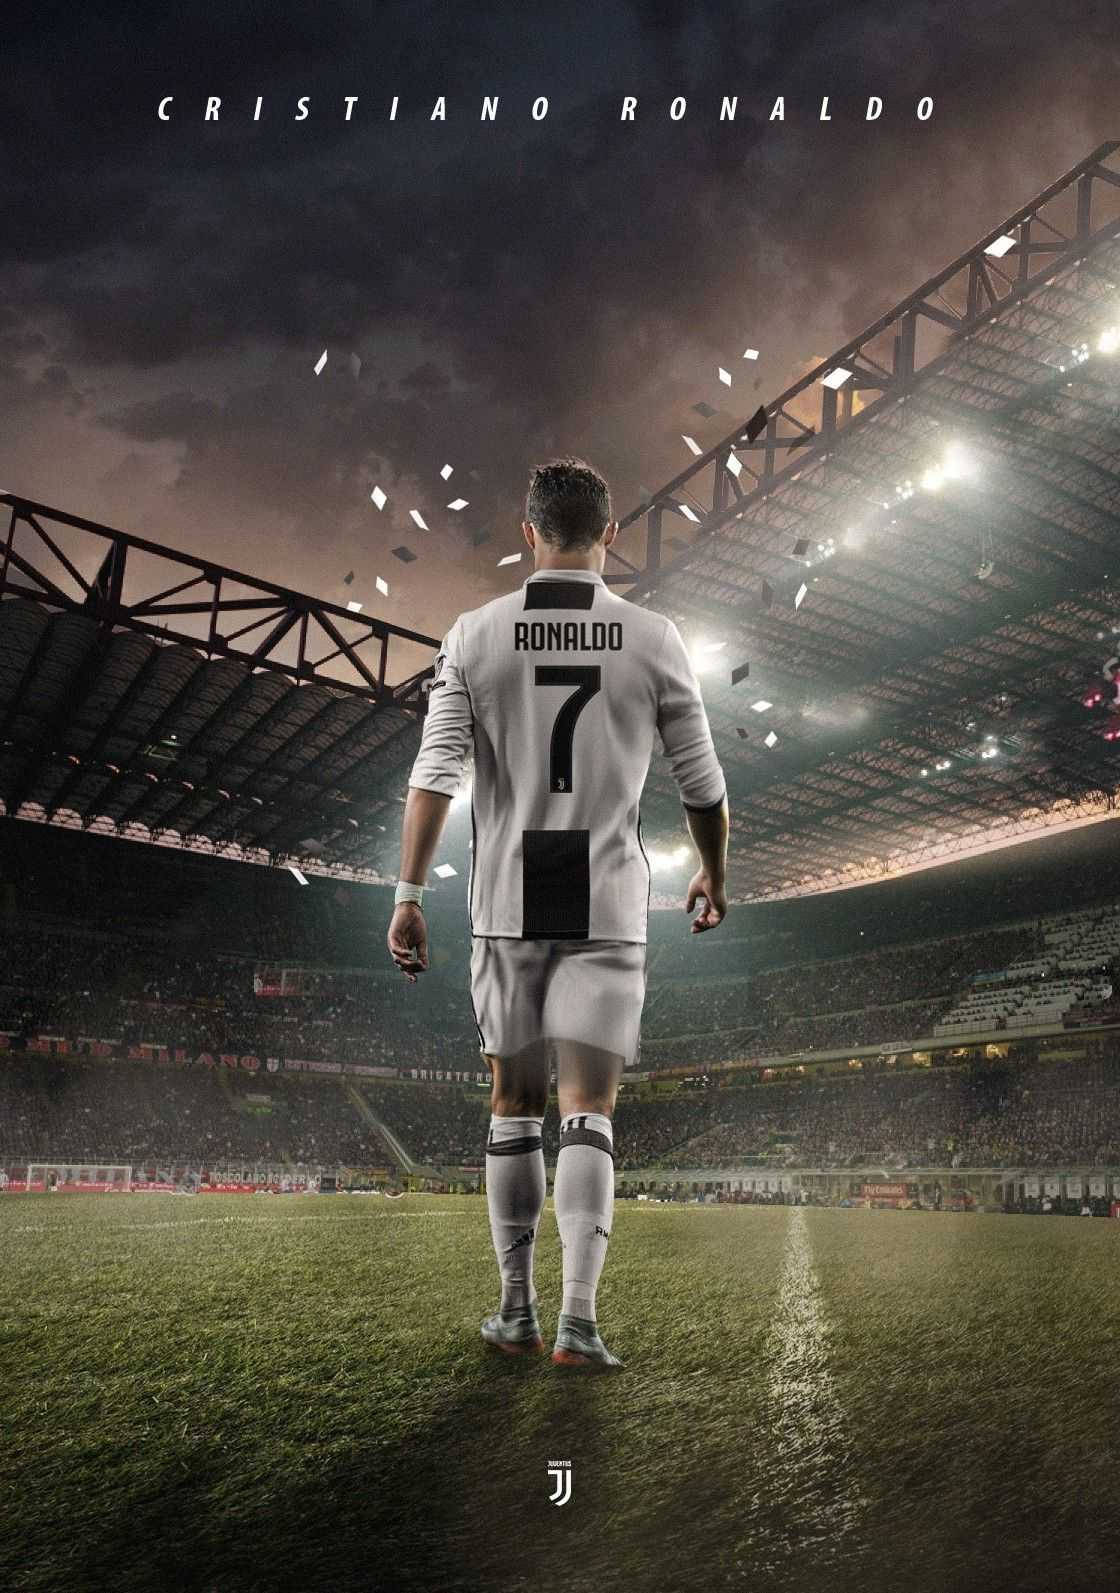 Free Cristiano Ronaldo Portugal Wallpaper Downloads, [100+] Cristiano  Ronaldo Portugal Wallpapers for FREE 